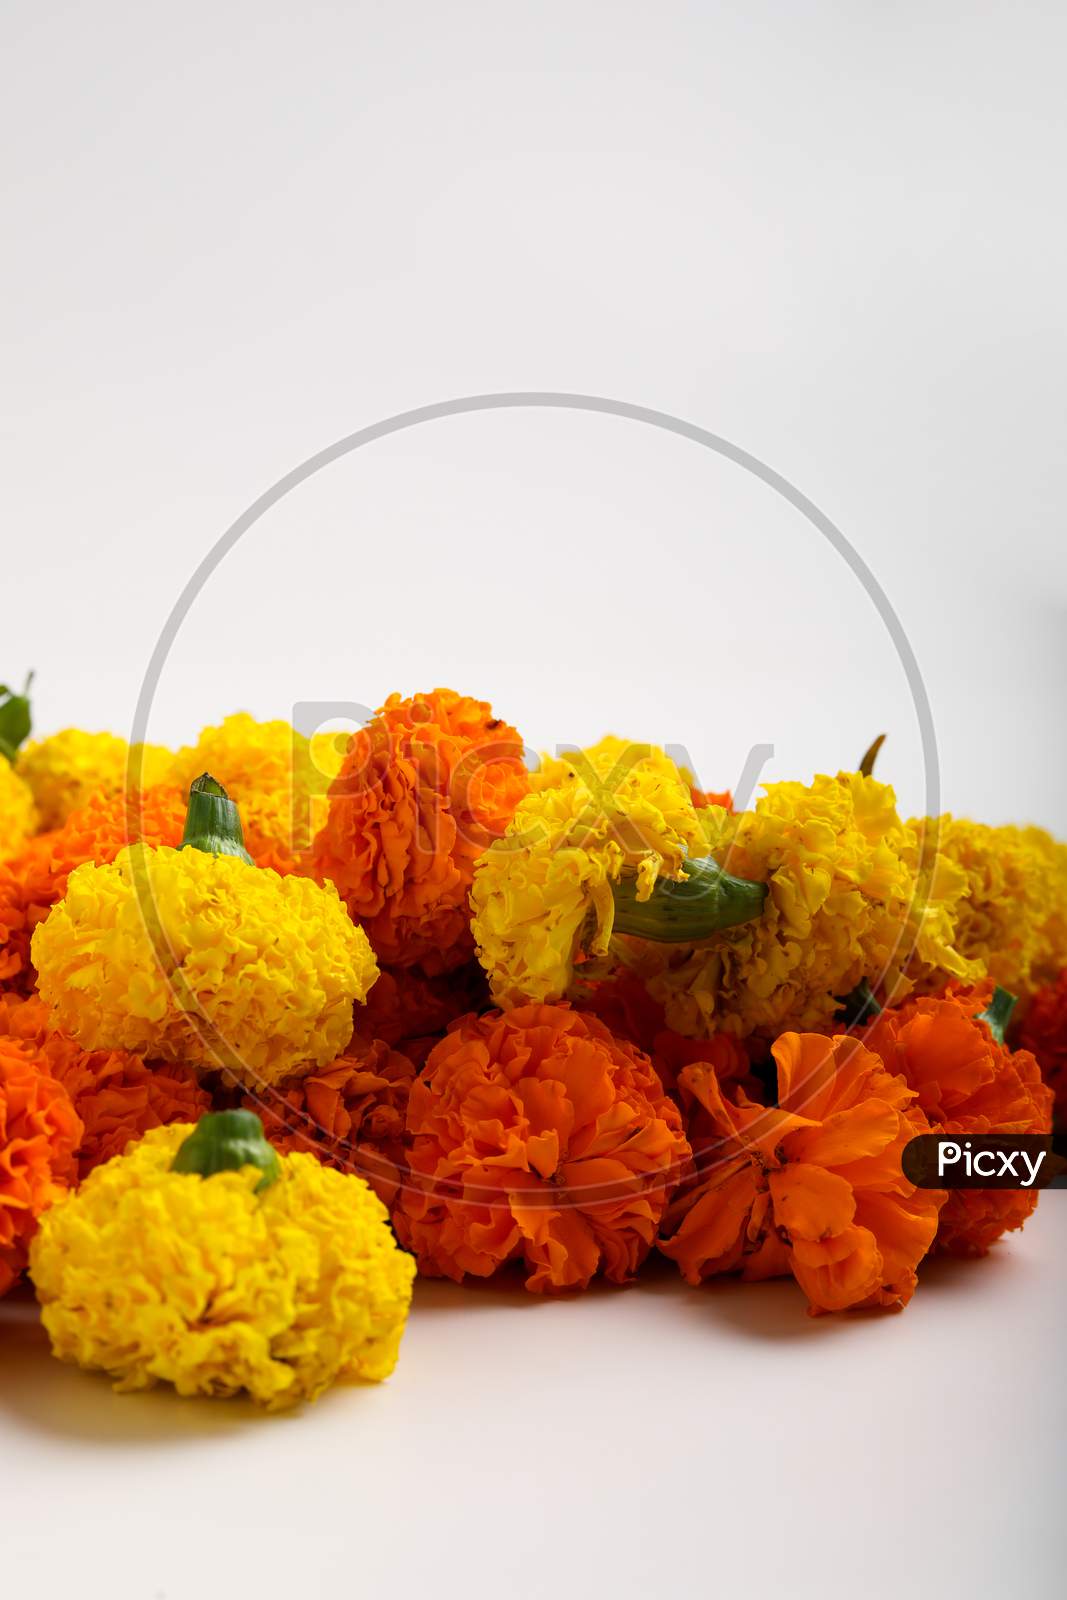 Marigold Flower Rangoli Design For Diwali Festival , Indian Festival Flower Decoration